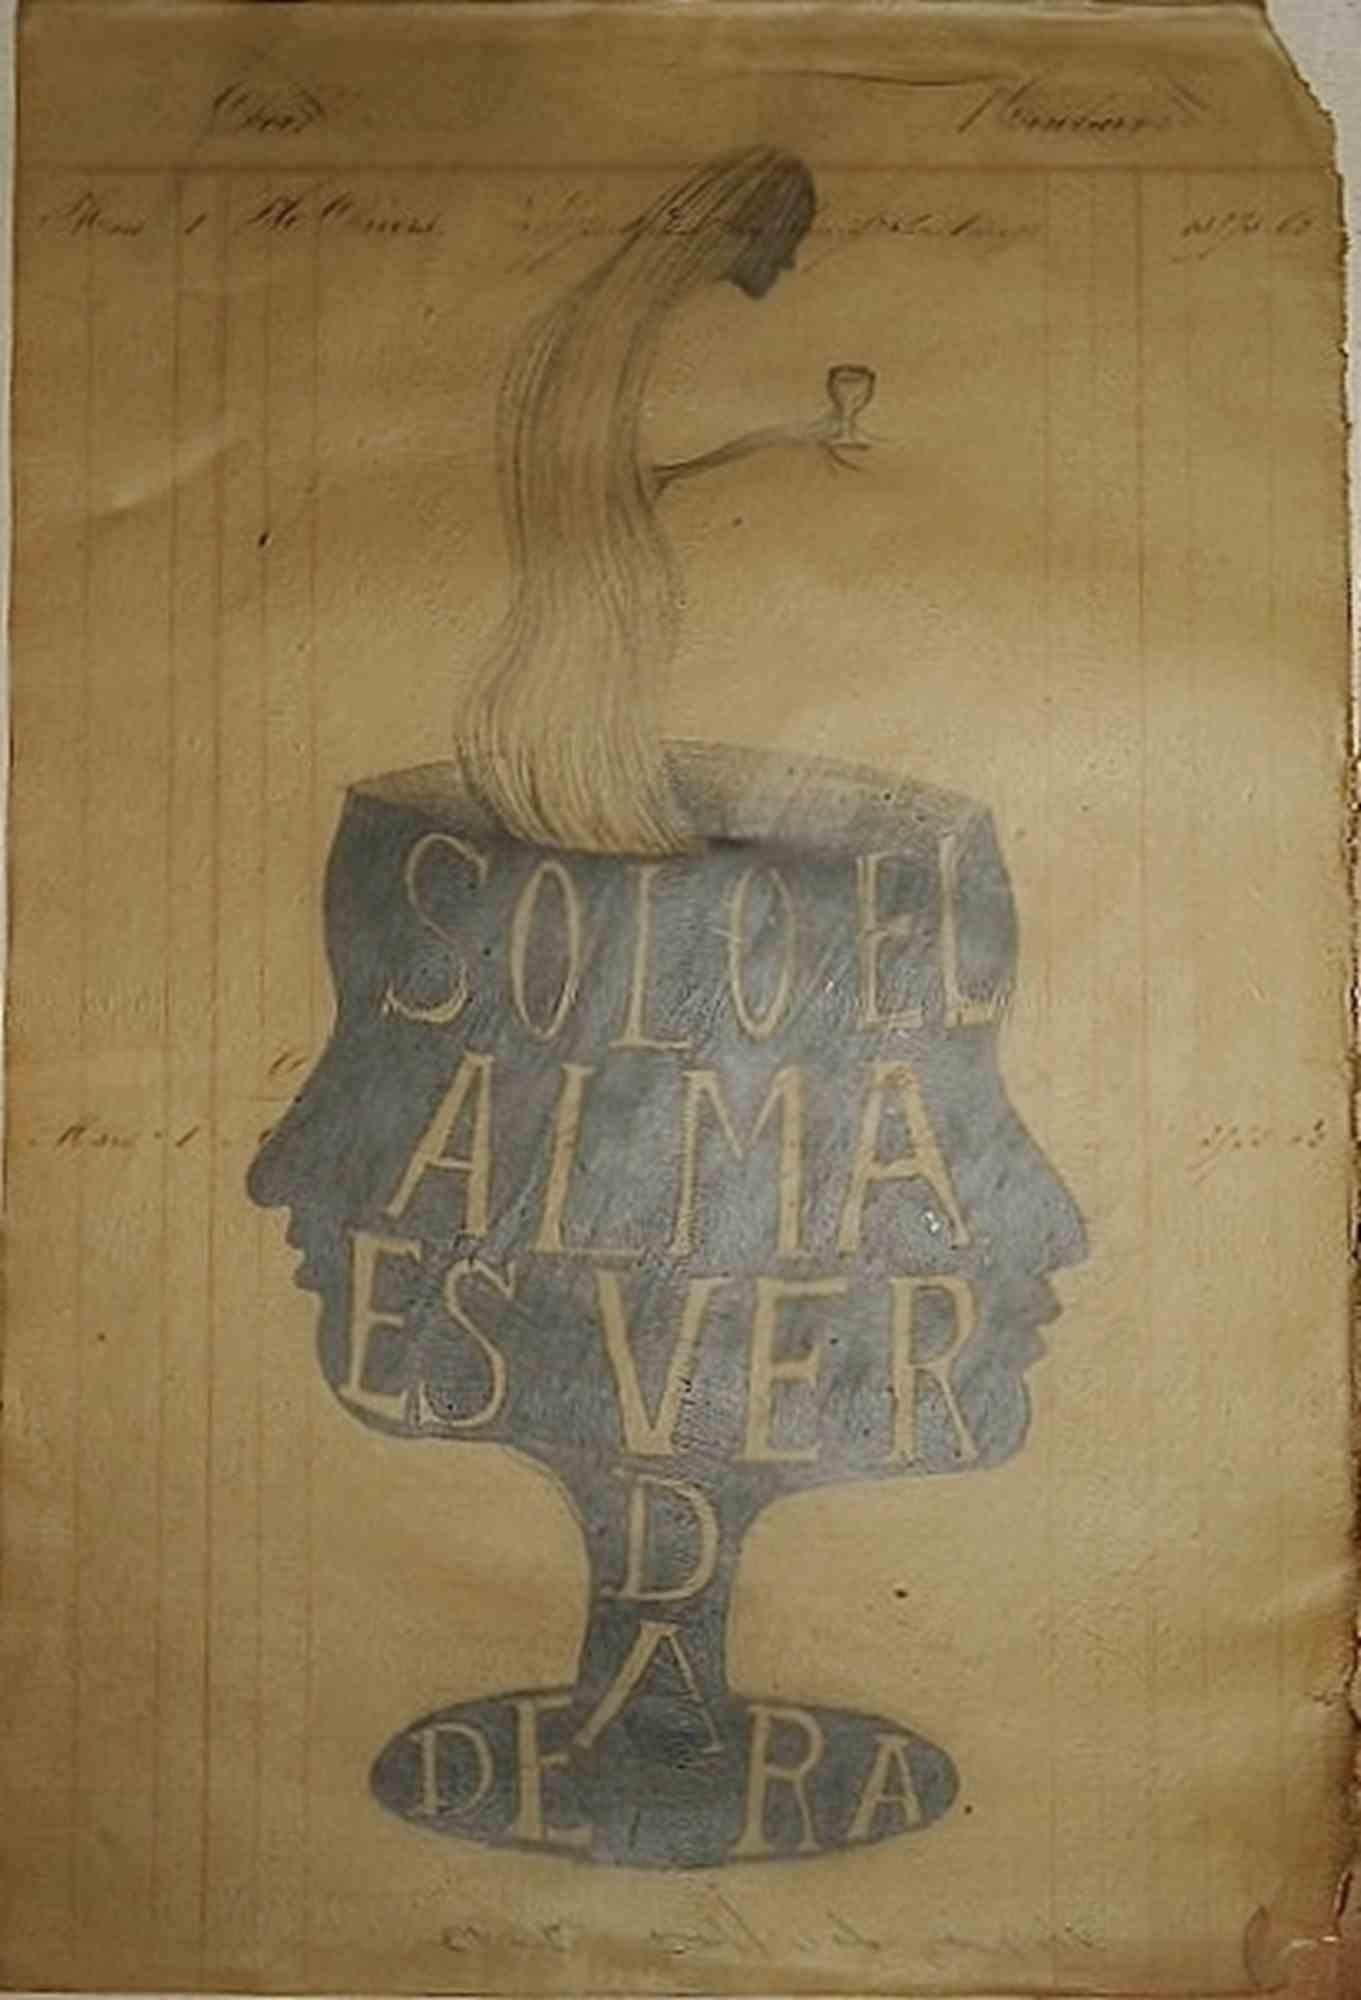 Solo el alma es verdadera ist ein zeitgenössisches Kunstwerk von Sandra Vásquez de la Horra aus dem Jahr 2013.

Bleistift auf Wachspapier.

Handsigniert auf der Rückseite.

Sandra Vasquez De La Horra wurde 1967 in Viña del Mar in Chile geboren. Sie